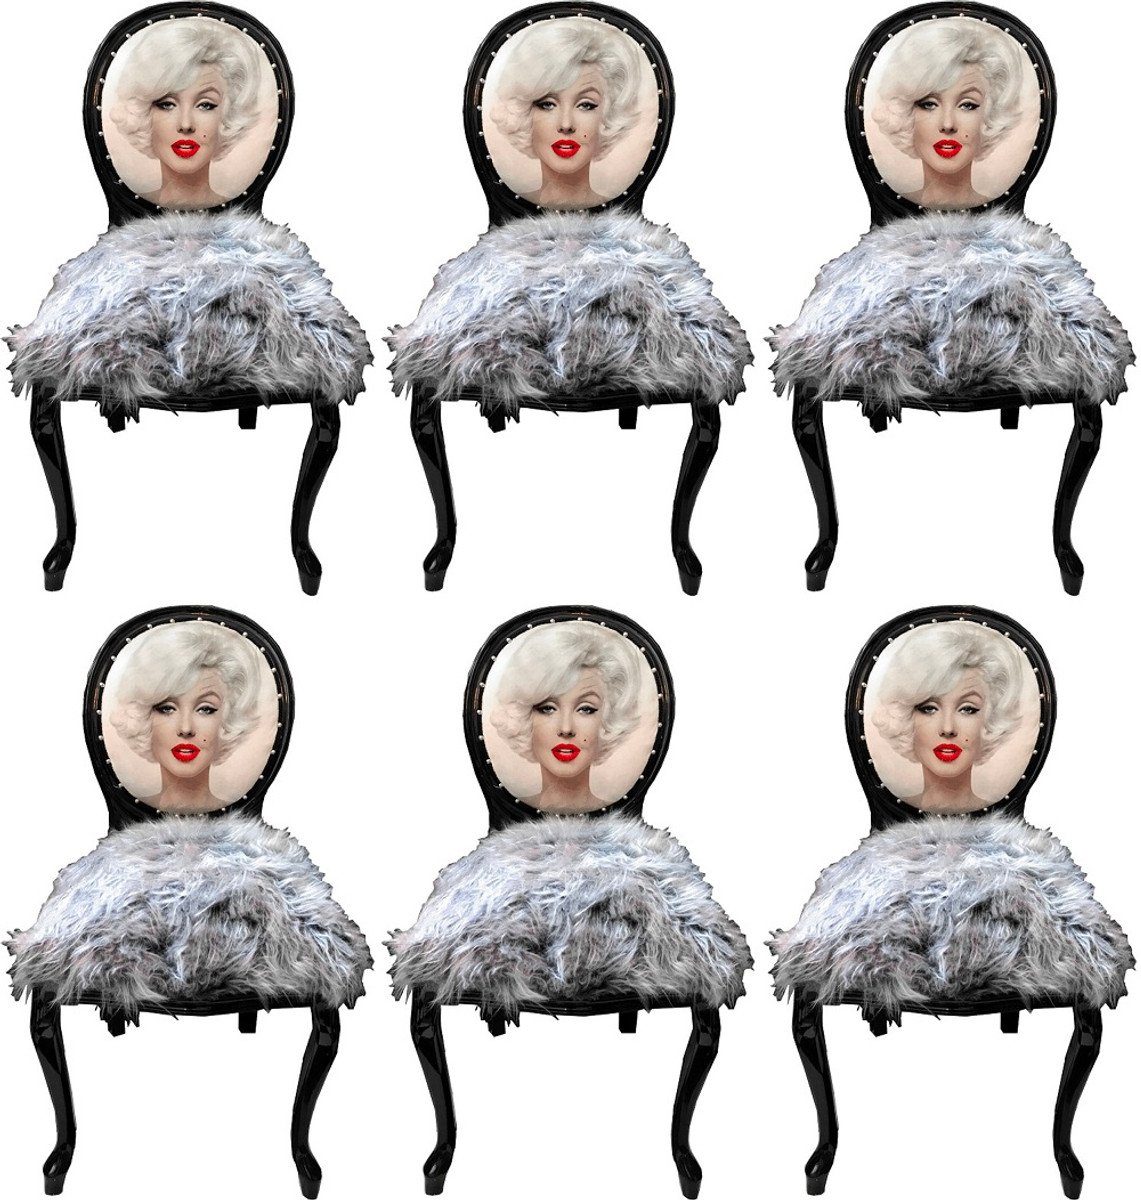 Casa Padrino Esszimmerstuhl Luxus Barock Esszimmerstuhl Set Marilyn Monroe Grau / Schwarz 50 x 60 x H. 104 cm - Handgefertigte Pop Art Designer Stühle mit Kunstfell - Barock Esszimmer Möbel